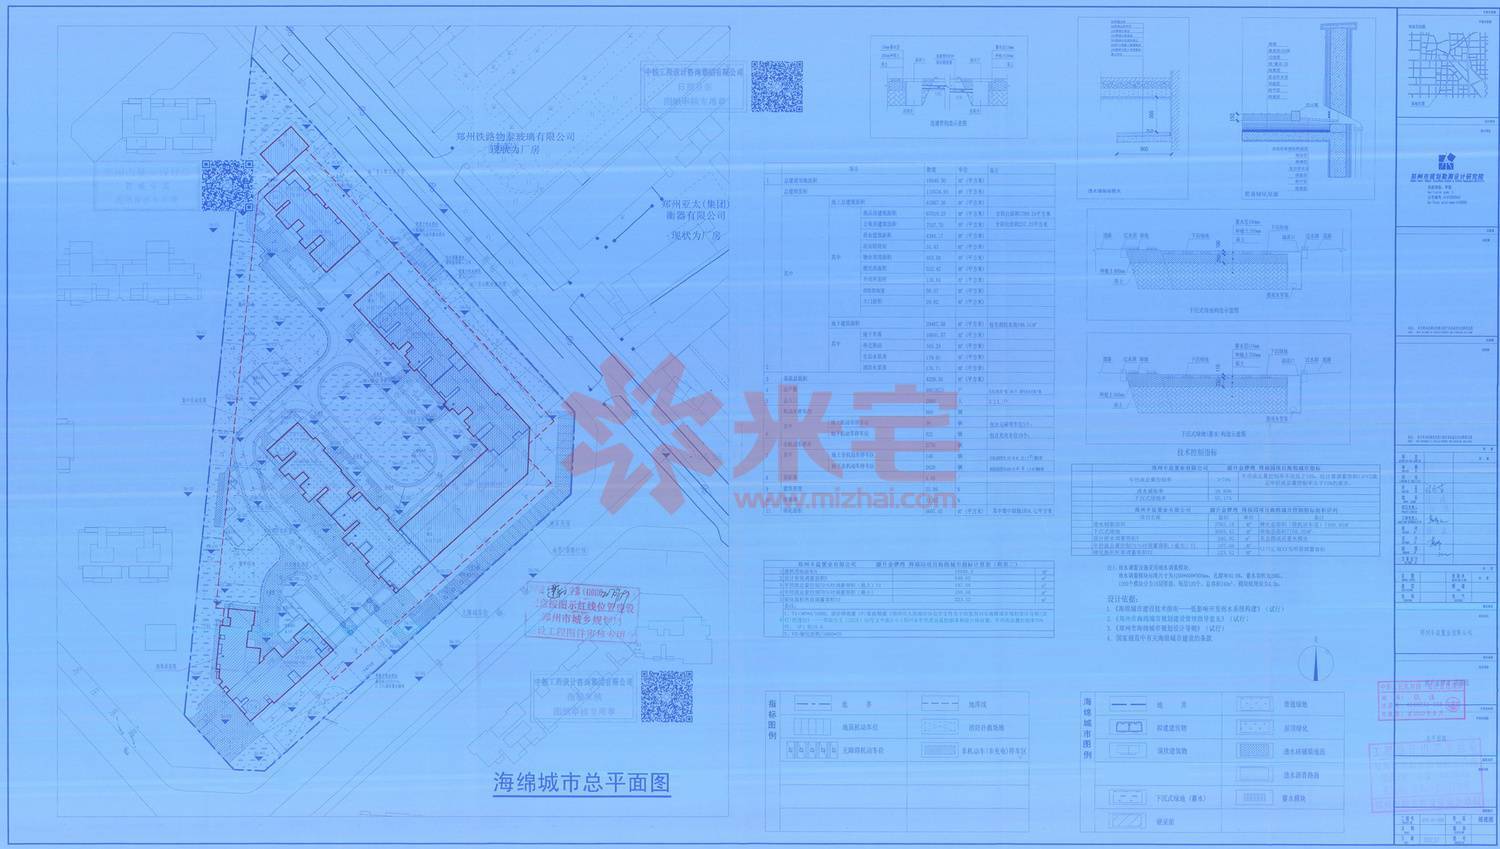 规划公示图 源升金锣湾得福园建设工程规划许可证图